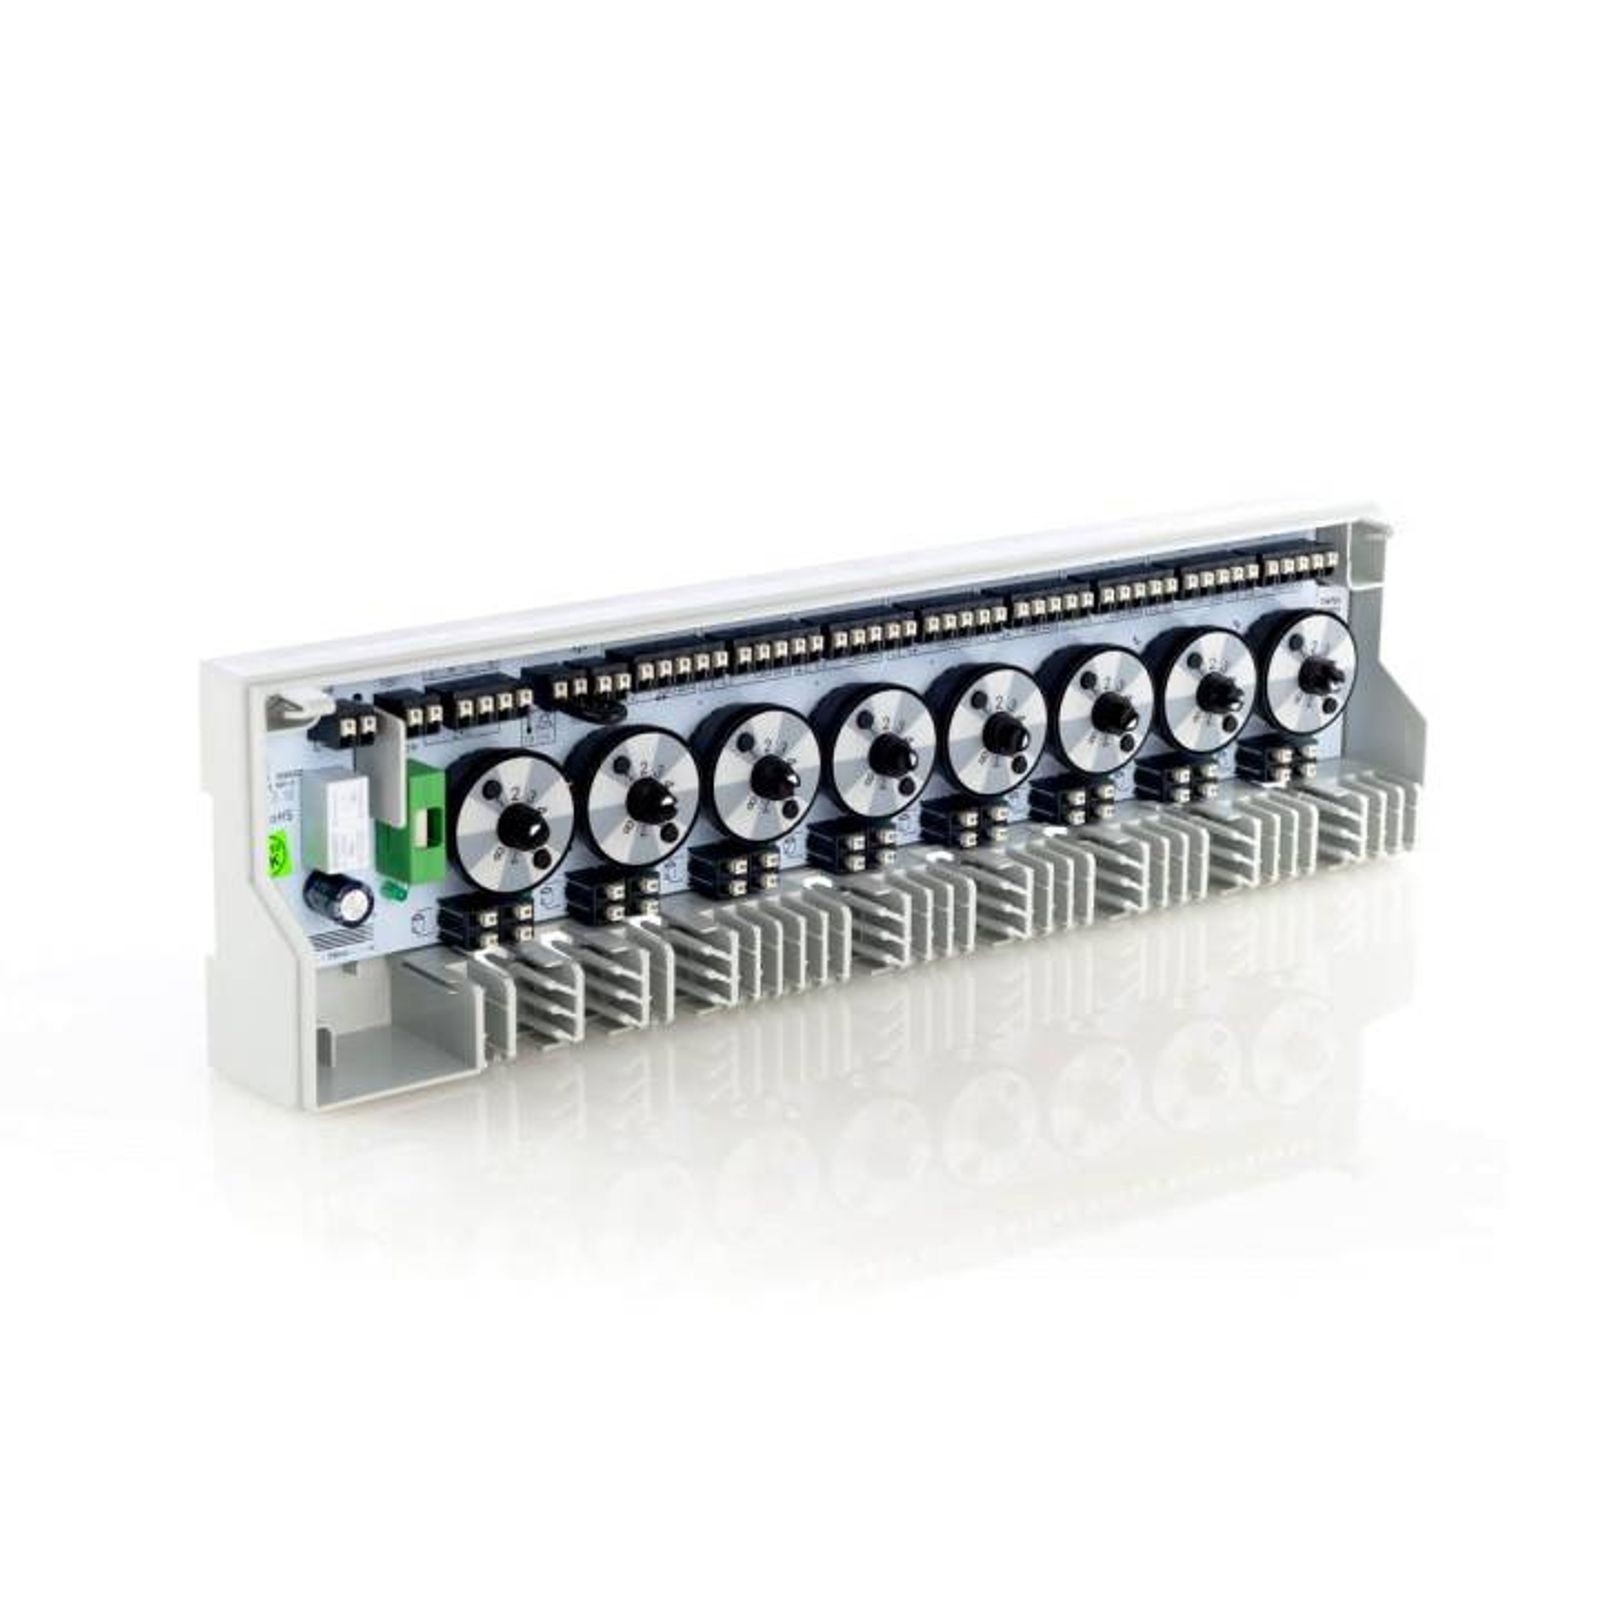 Möhlenhoff Anschlussleiste Alpha Basis direct Switch 230 V für 8 Zonen